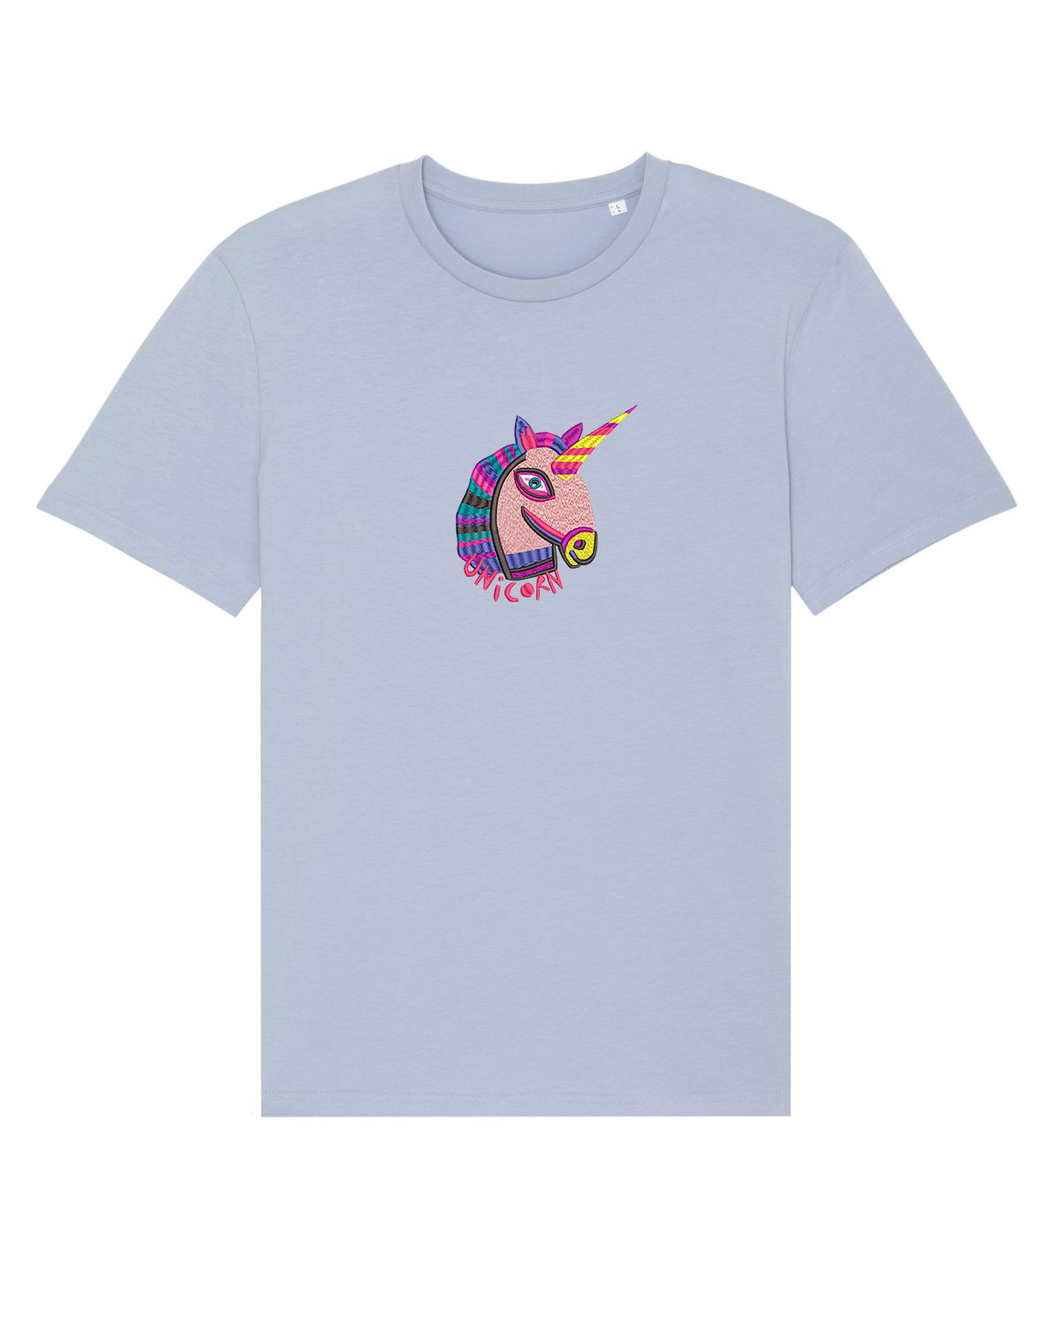 Unicorn 🦄 - Embroidered unisex T-shirt